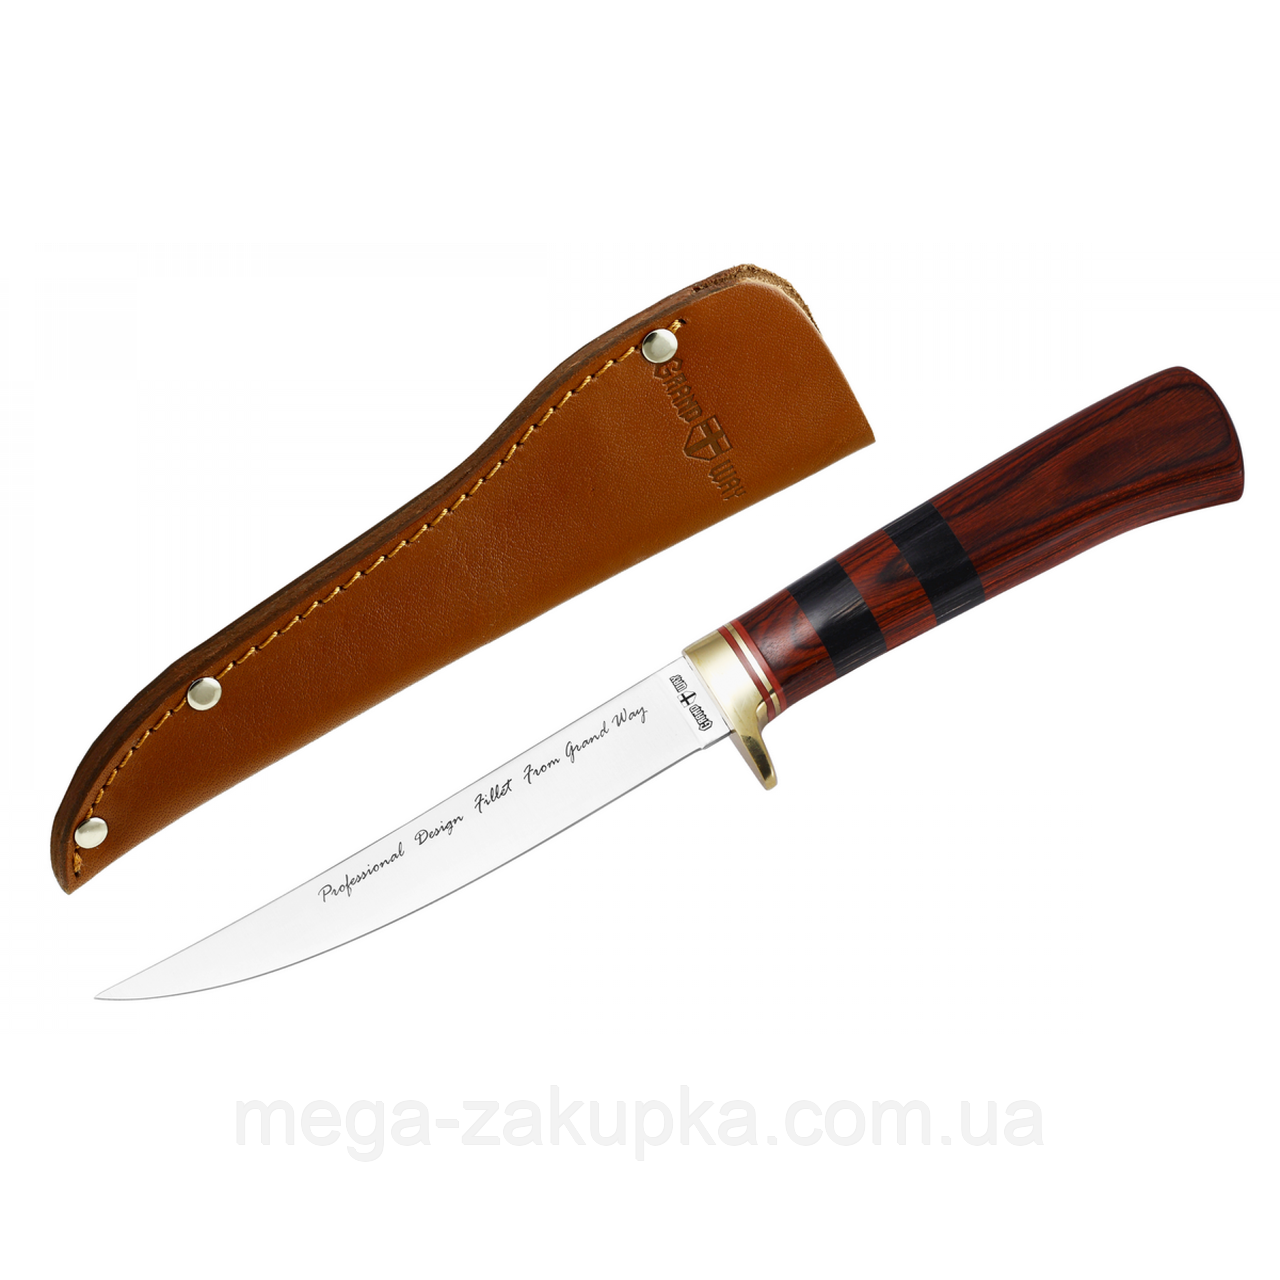 Нож филейный для разделки мяса рыбы и свинины, с кожаным чехлом